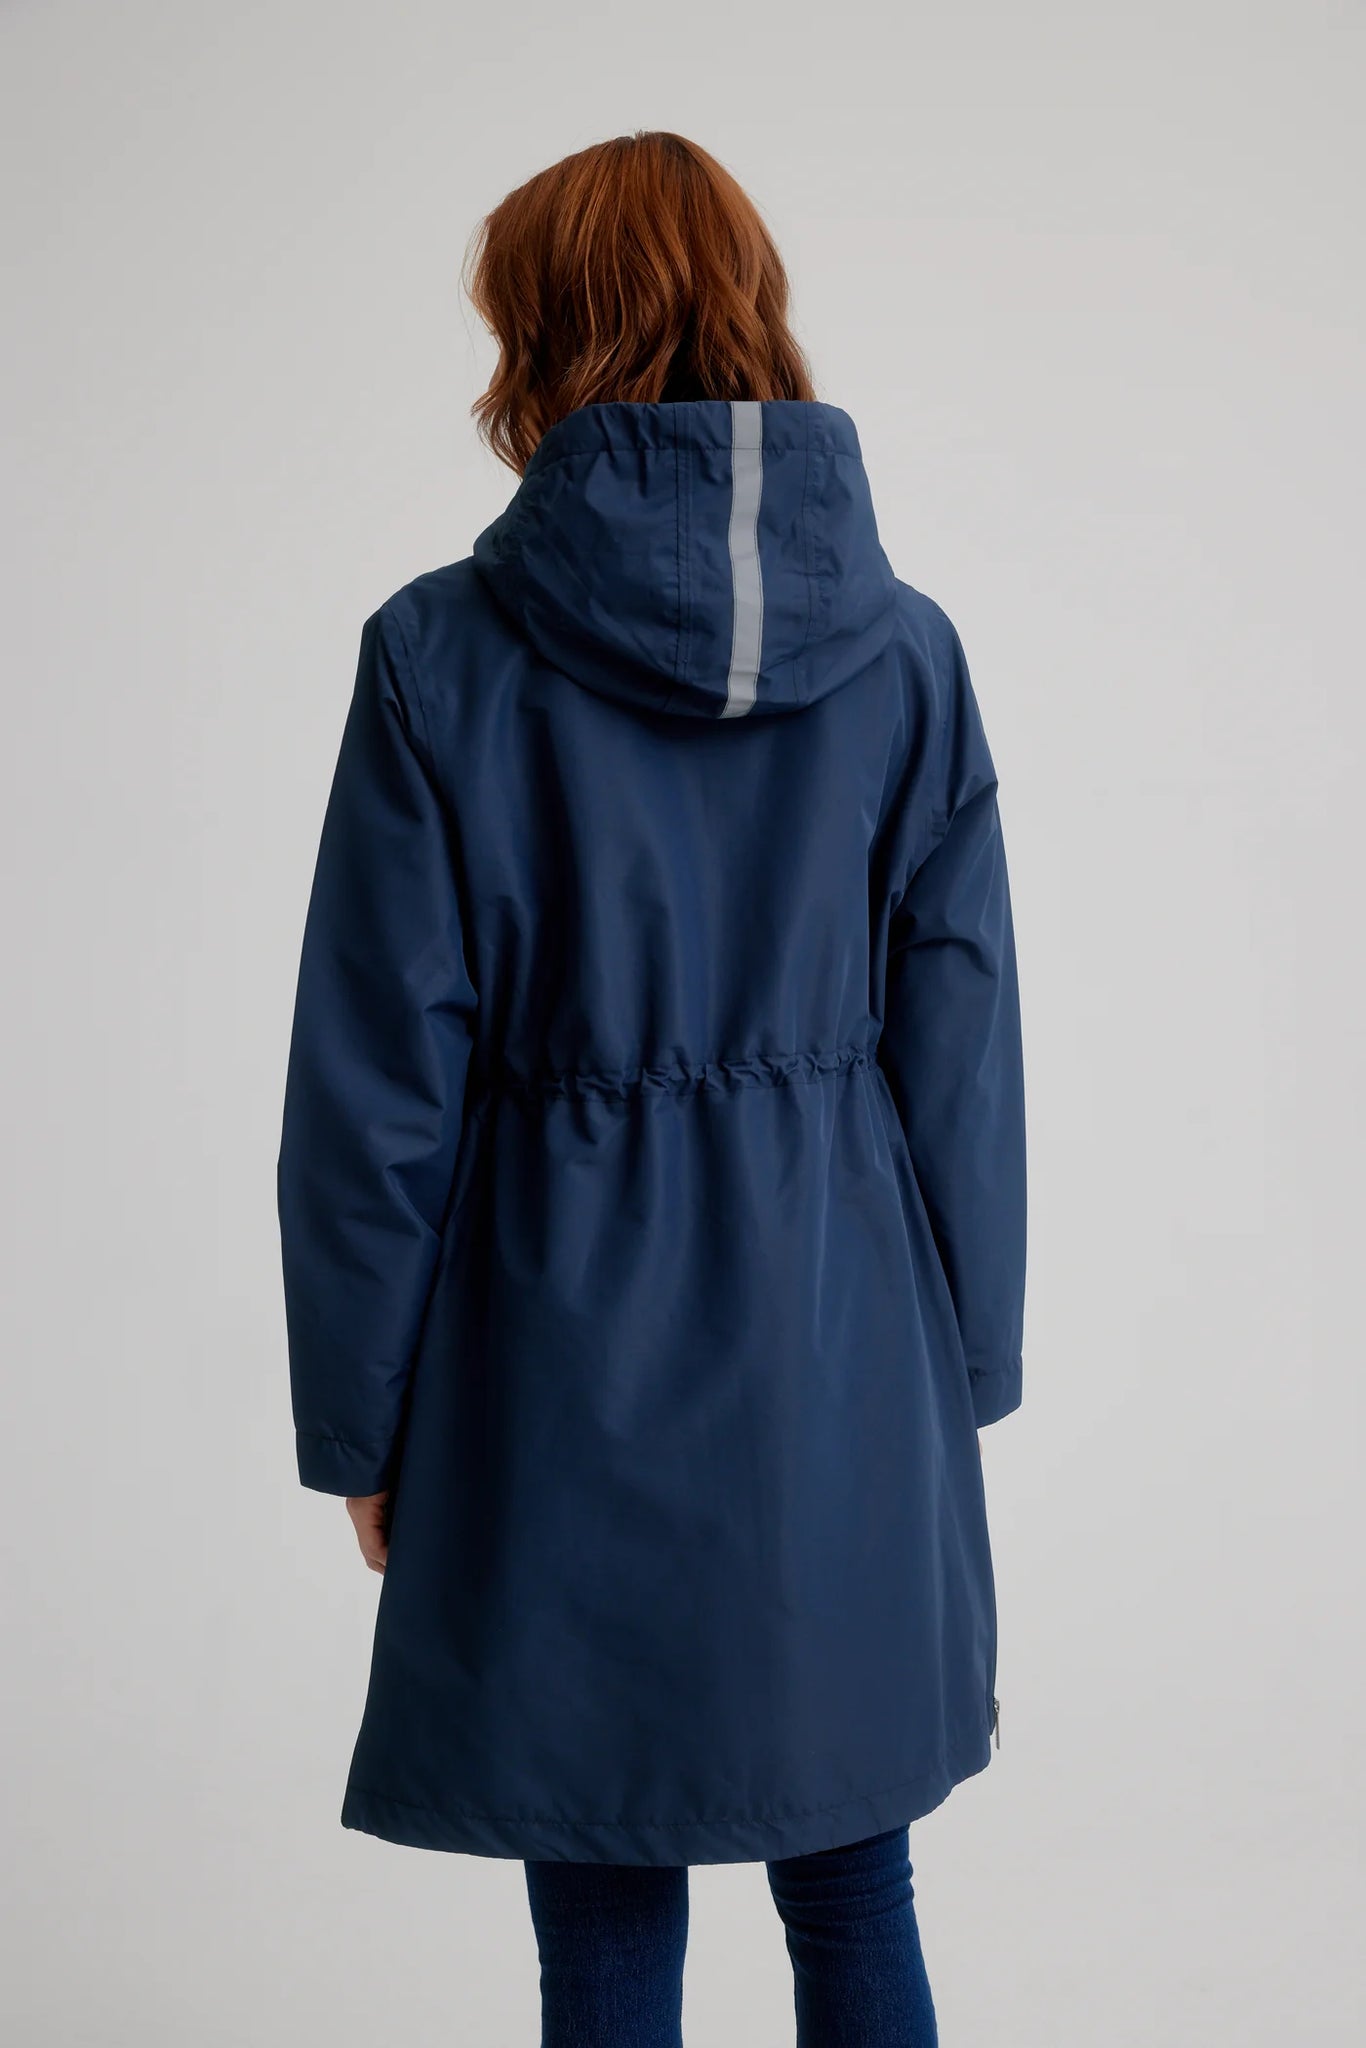 CRO Hooded Magic Print Waterproof Raincoat | Navy